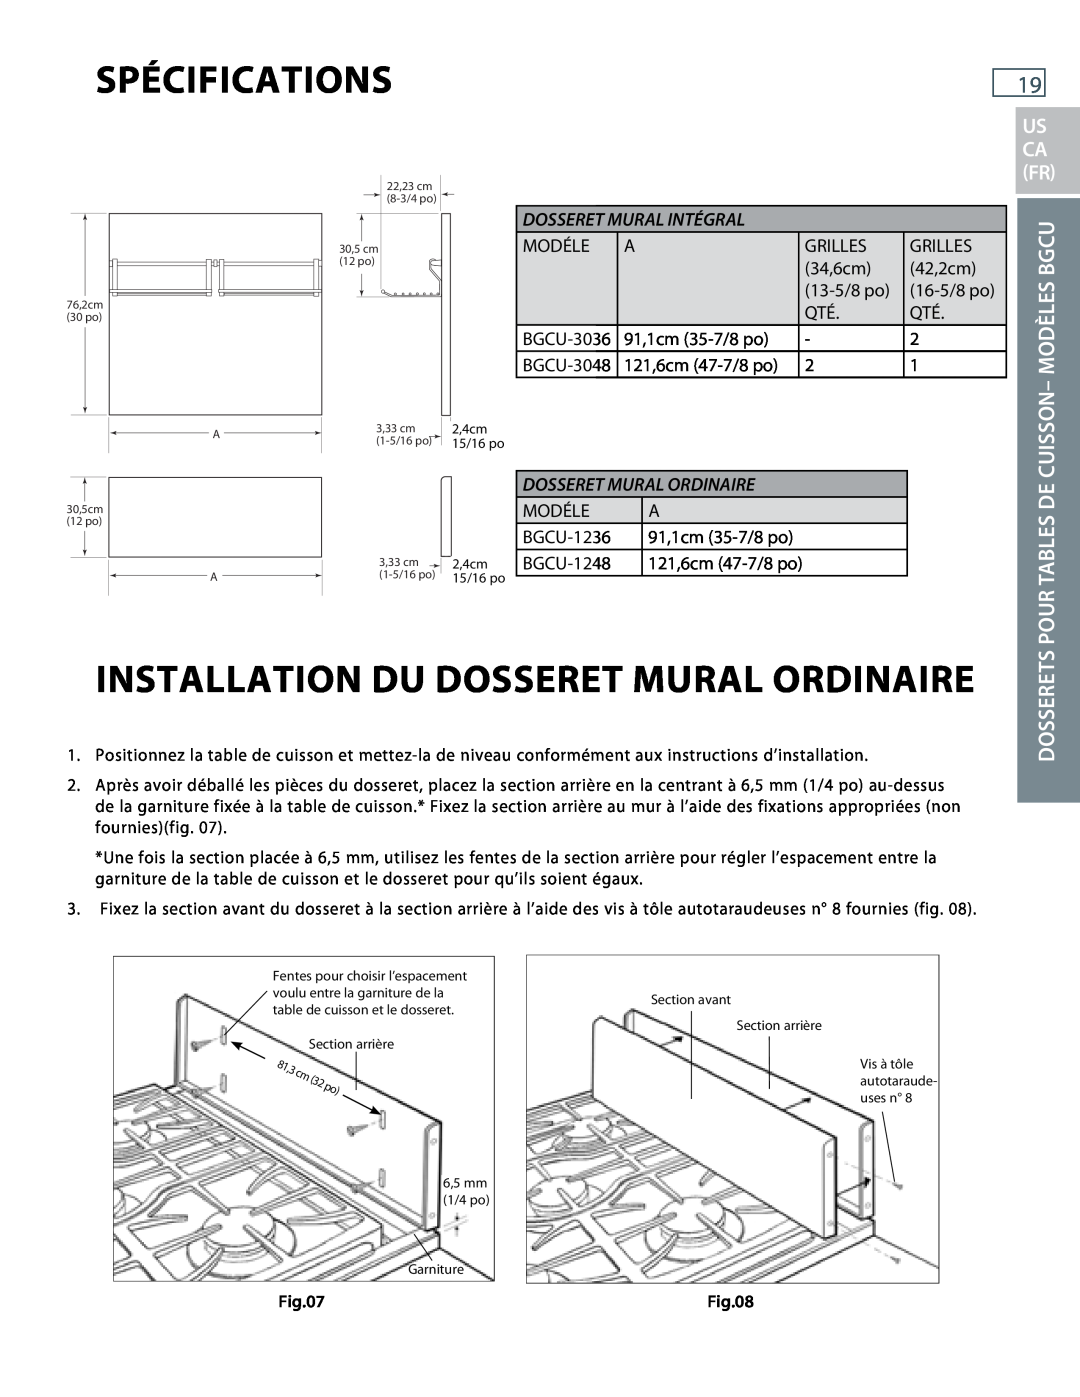 DCS BGRU, BGCU Installation Du Dosseret Mural Ordinaire, Modèles Bgcu, Pour Tables De Cuisson, Dosserets, Spécifications 